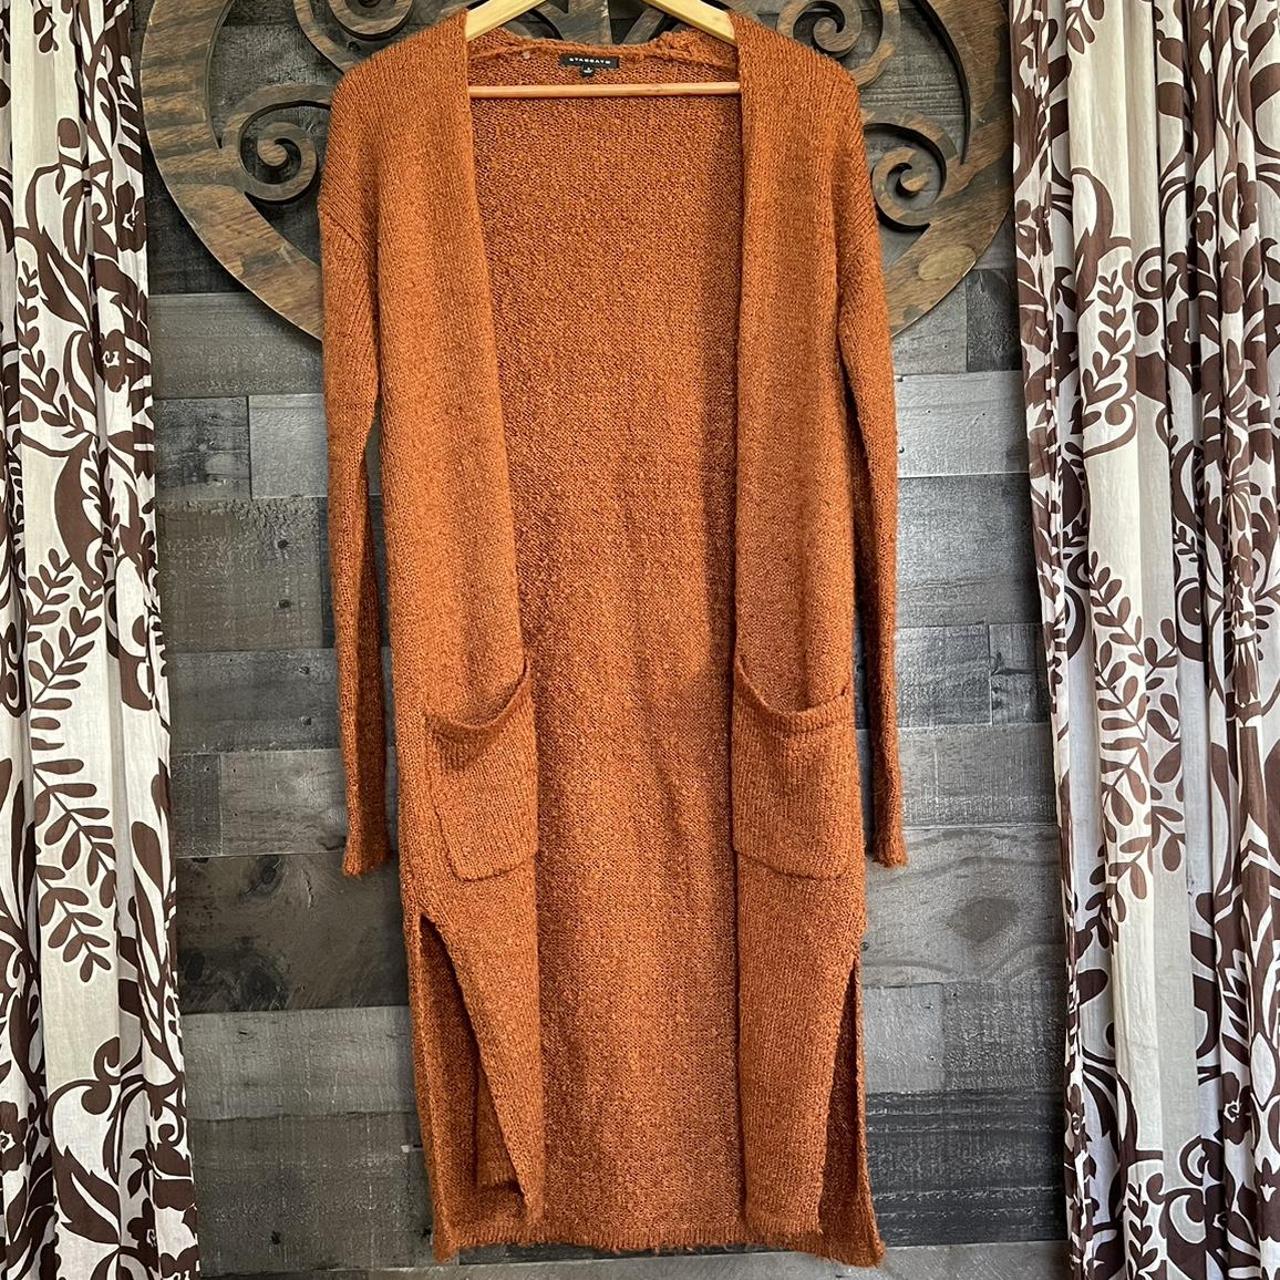 Rust Brown Cardigan - Cardigan Sweater - Duster Cardigan Sweater